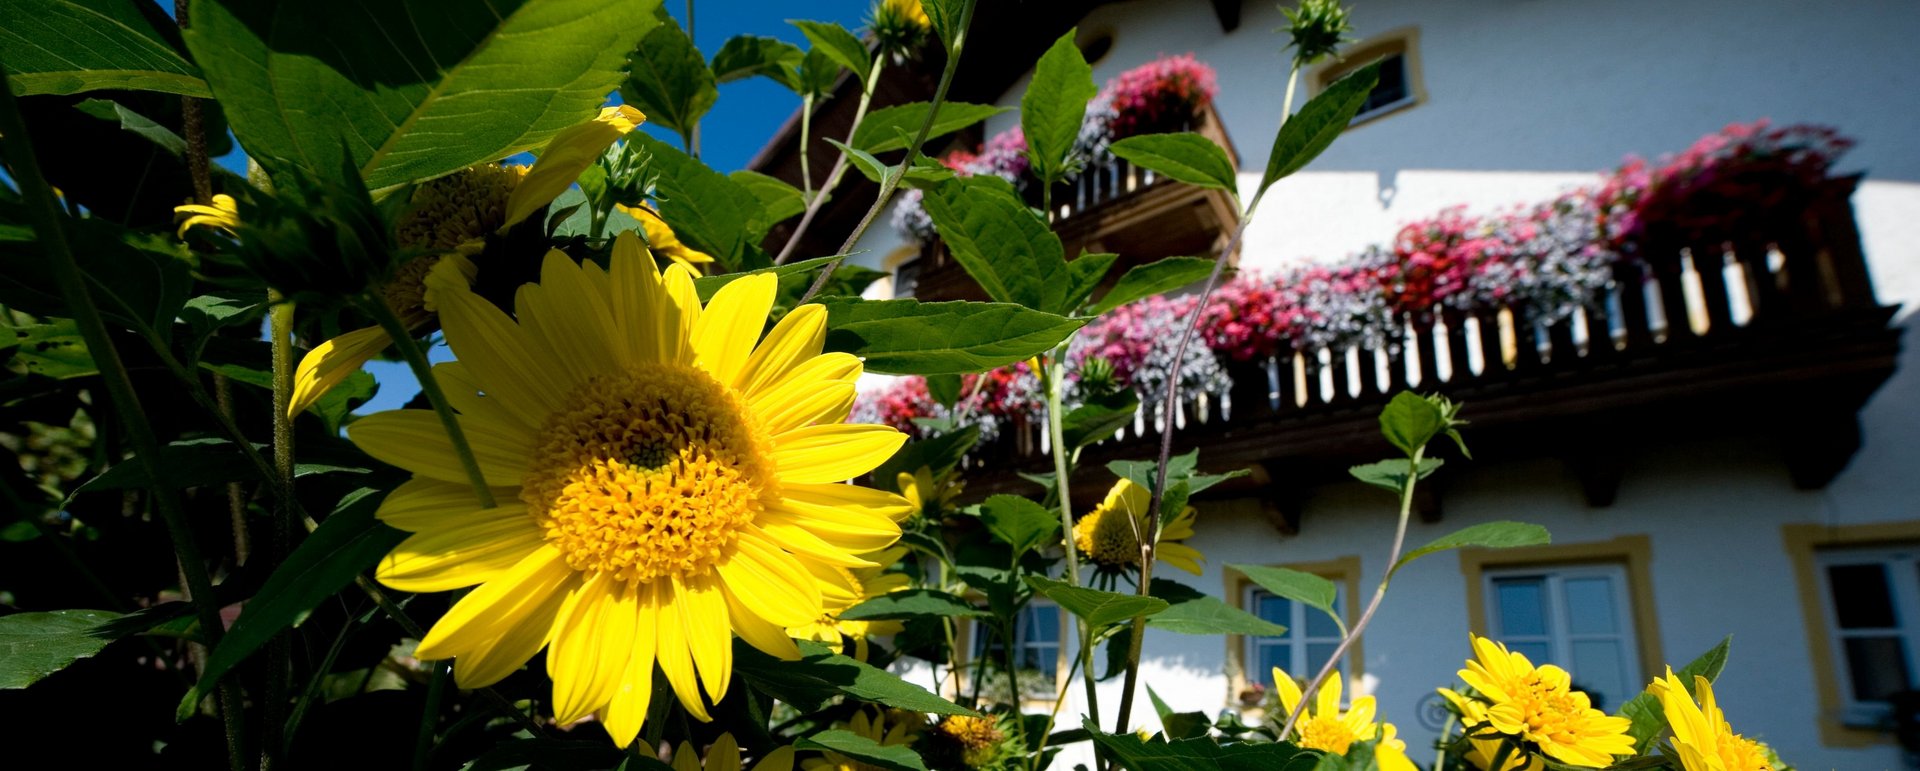 Sonnenblumen blühen vor einem Bauernhaus 